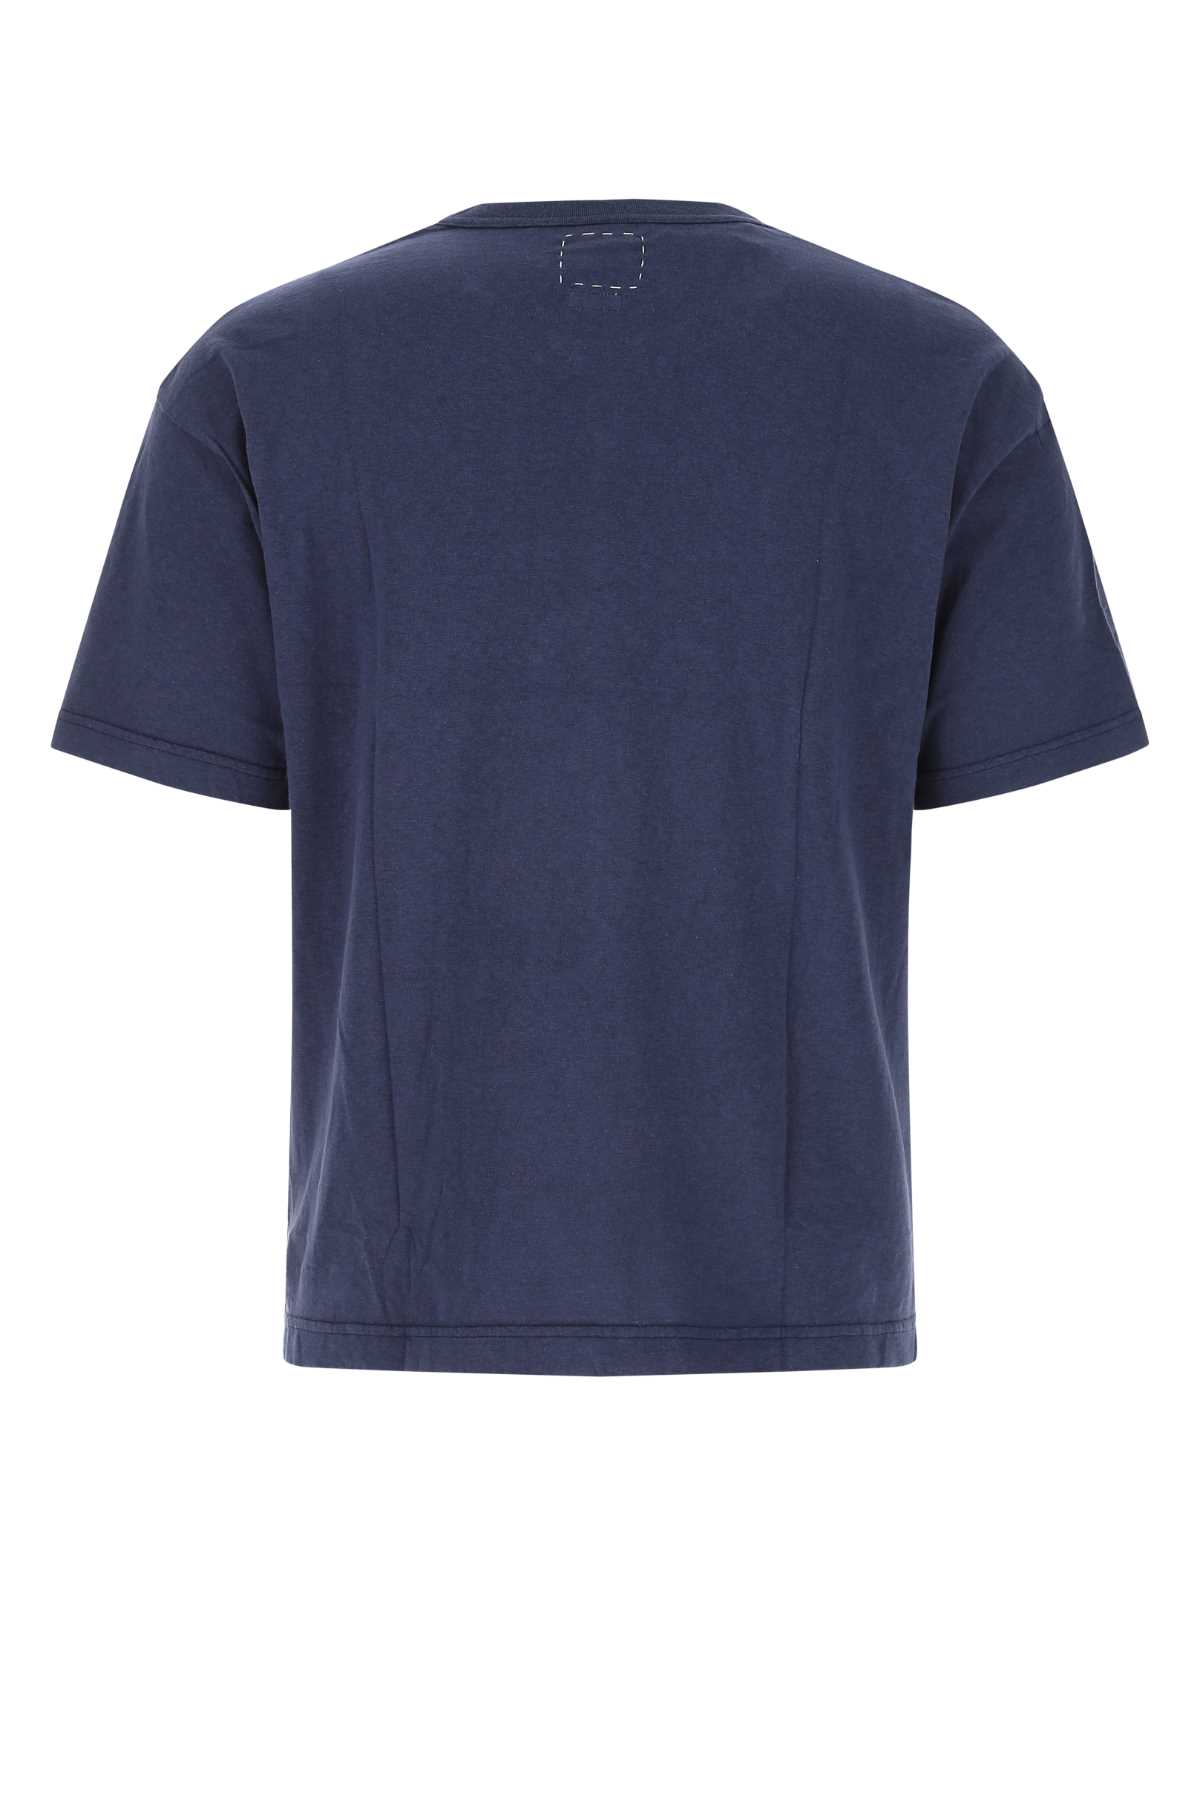 Visvim Blue Cotton Alumni T-shirt In Navy